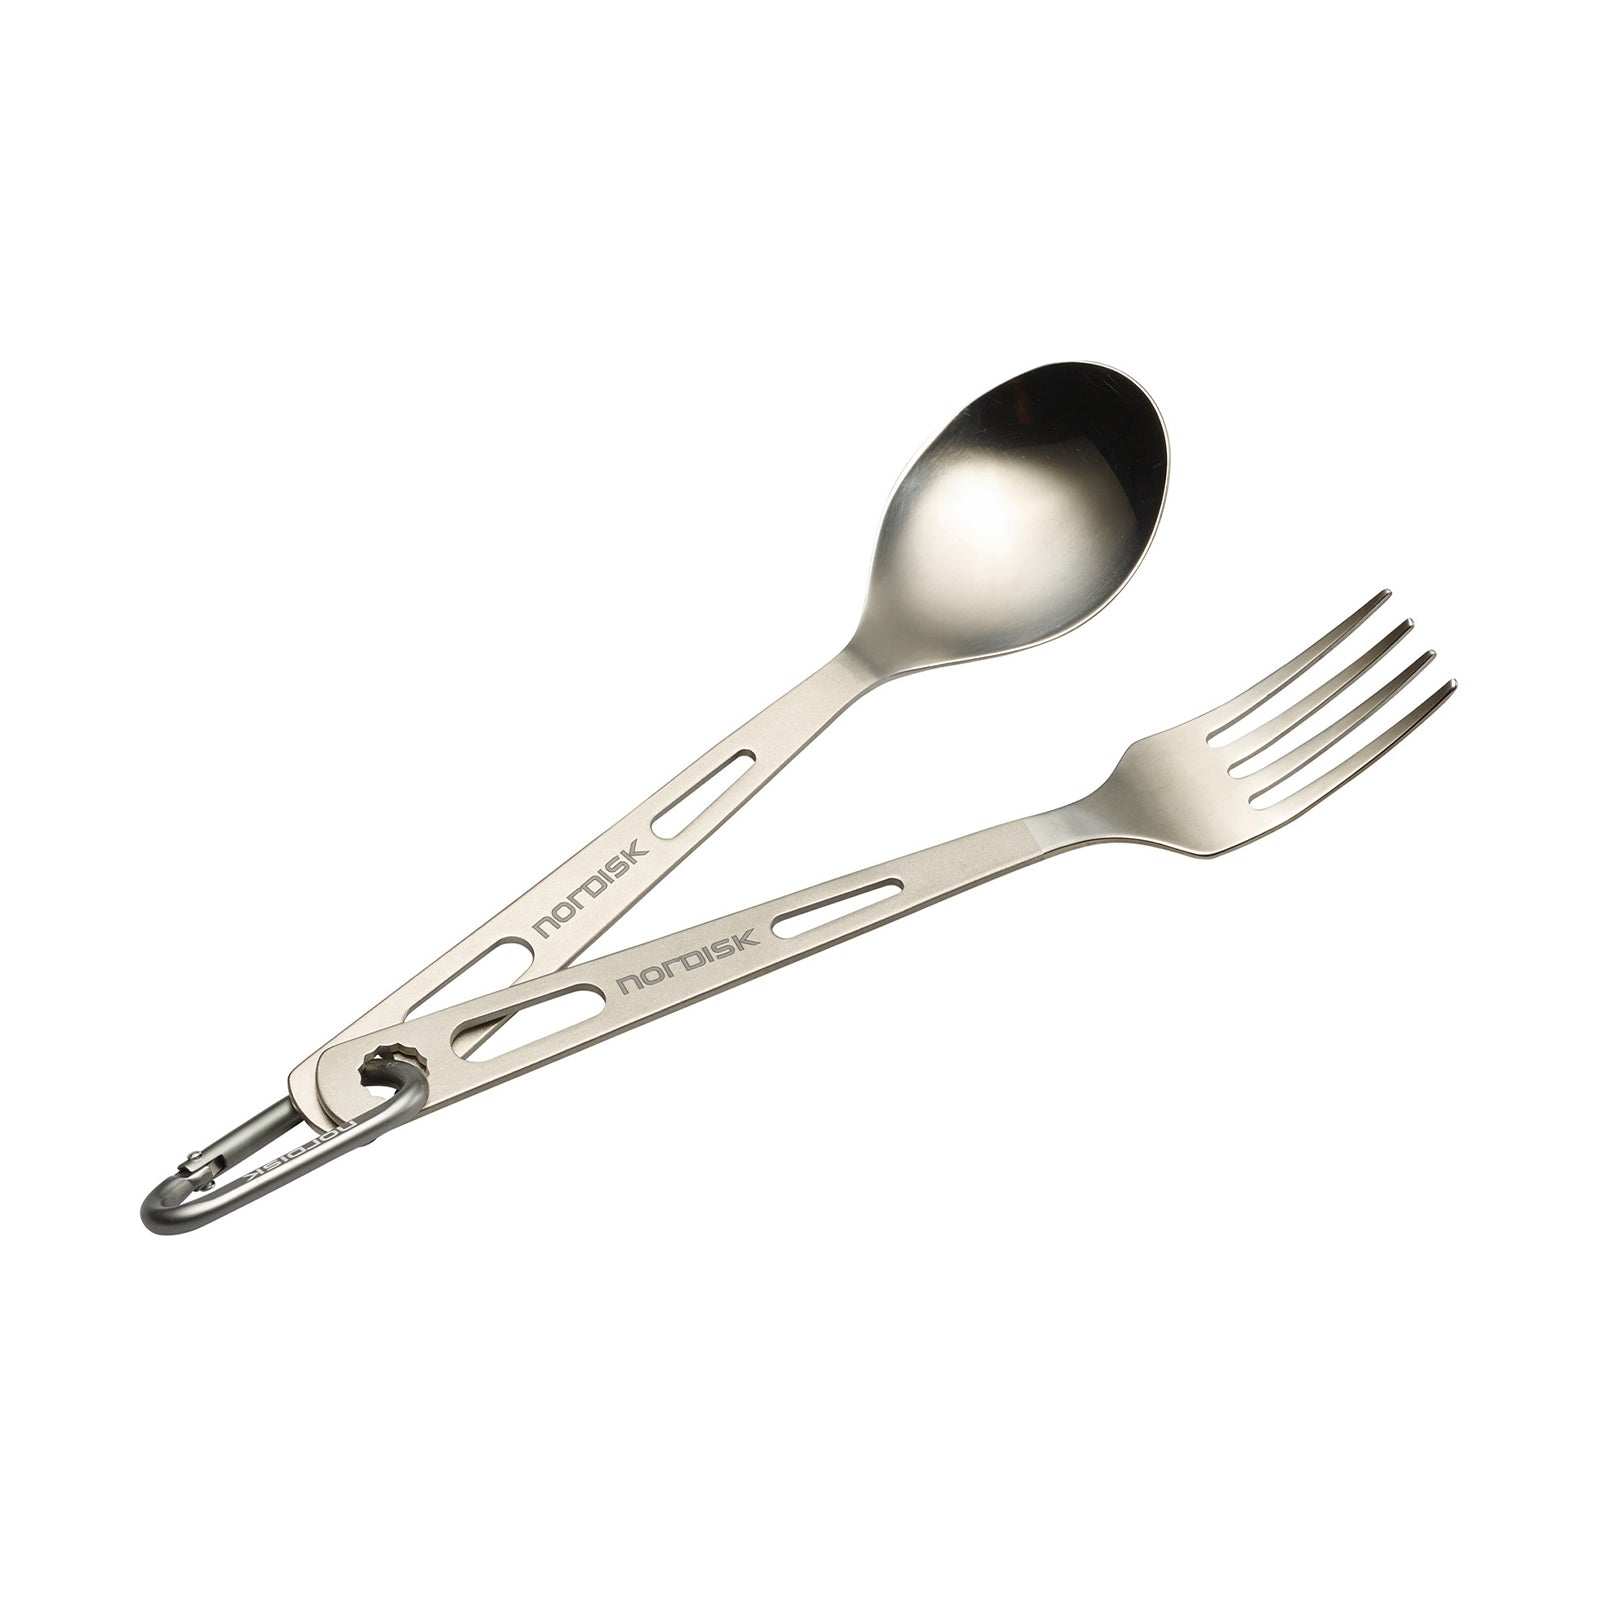 Nordisk - Titanium cutlery set